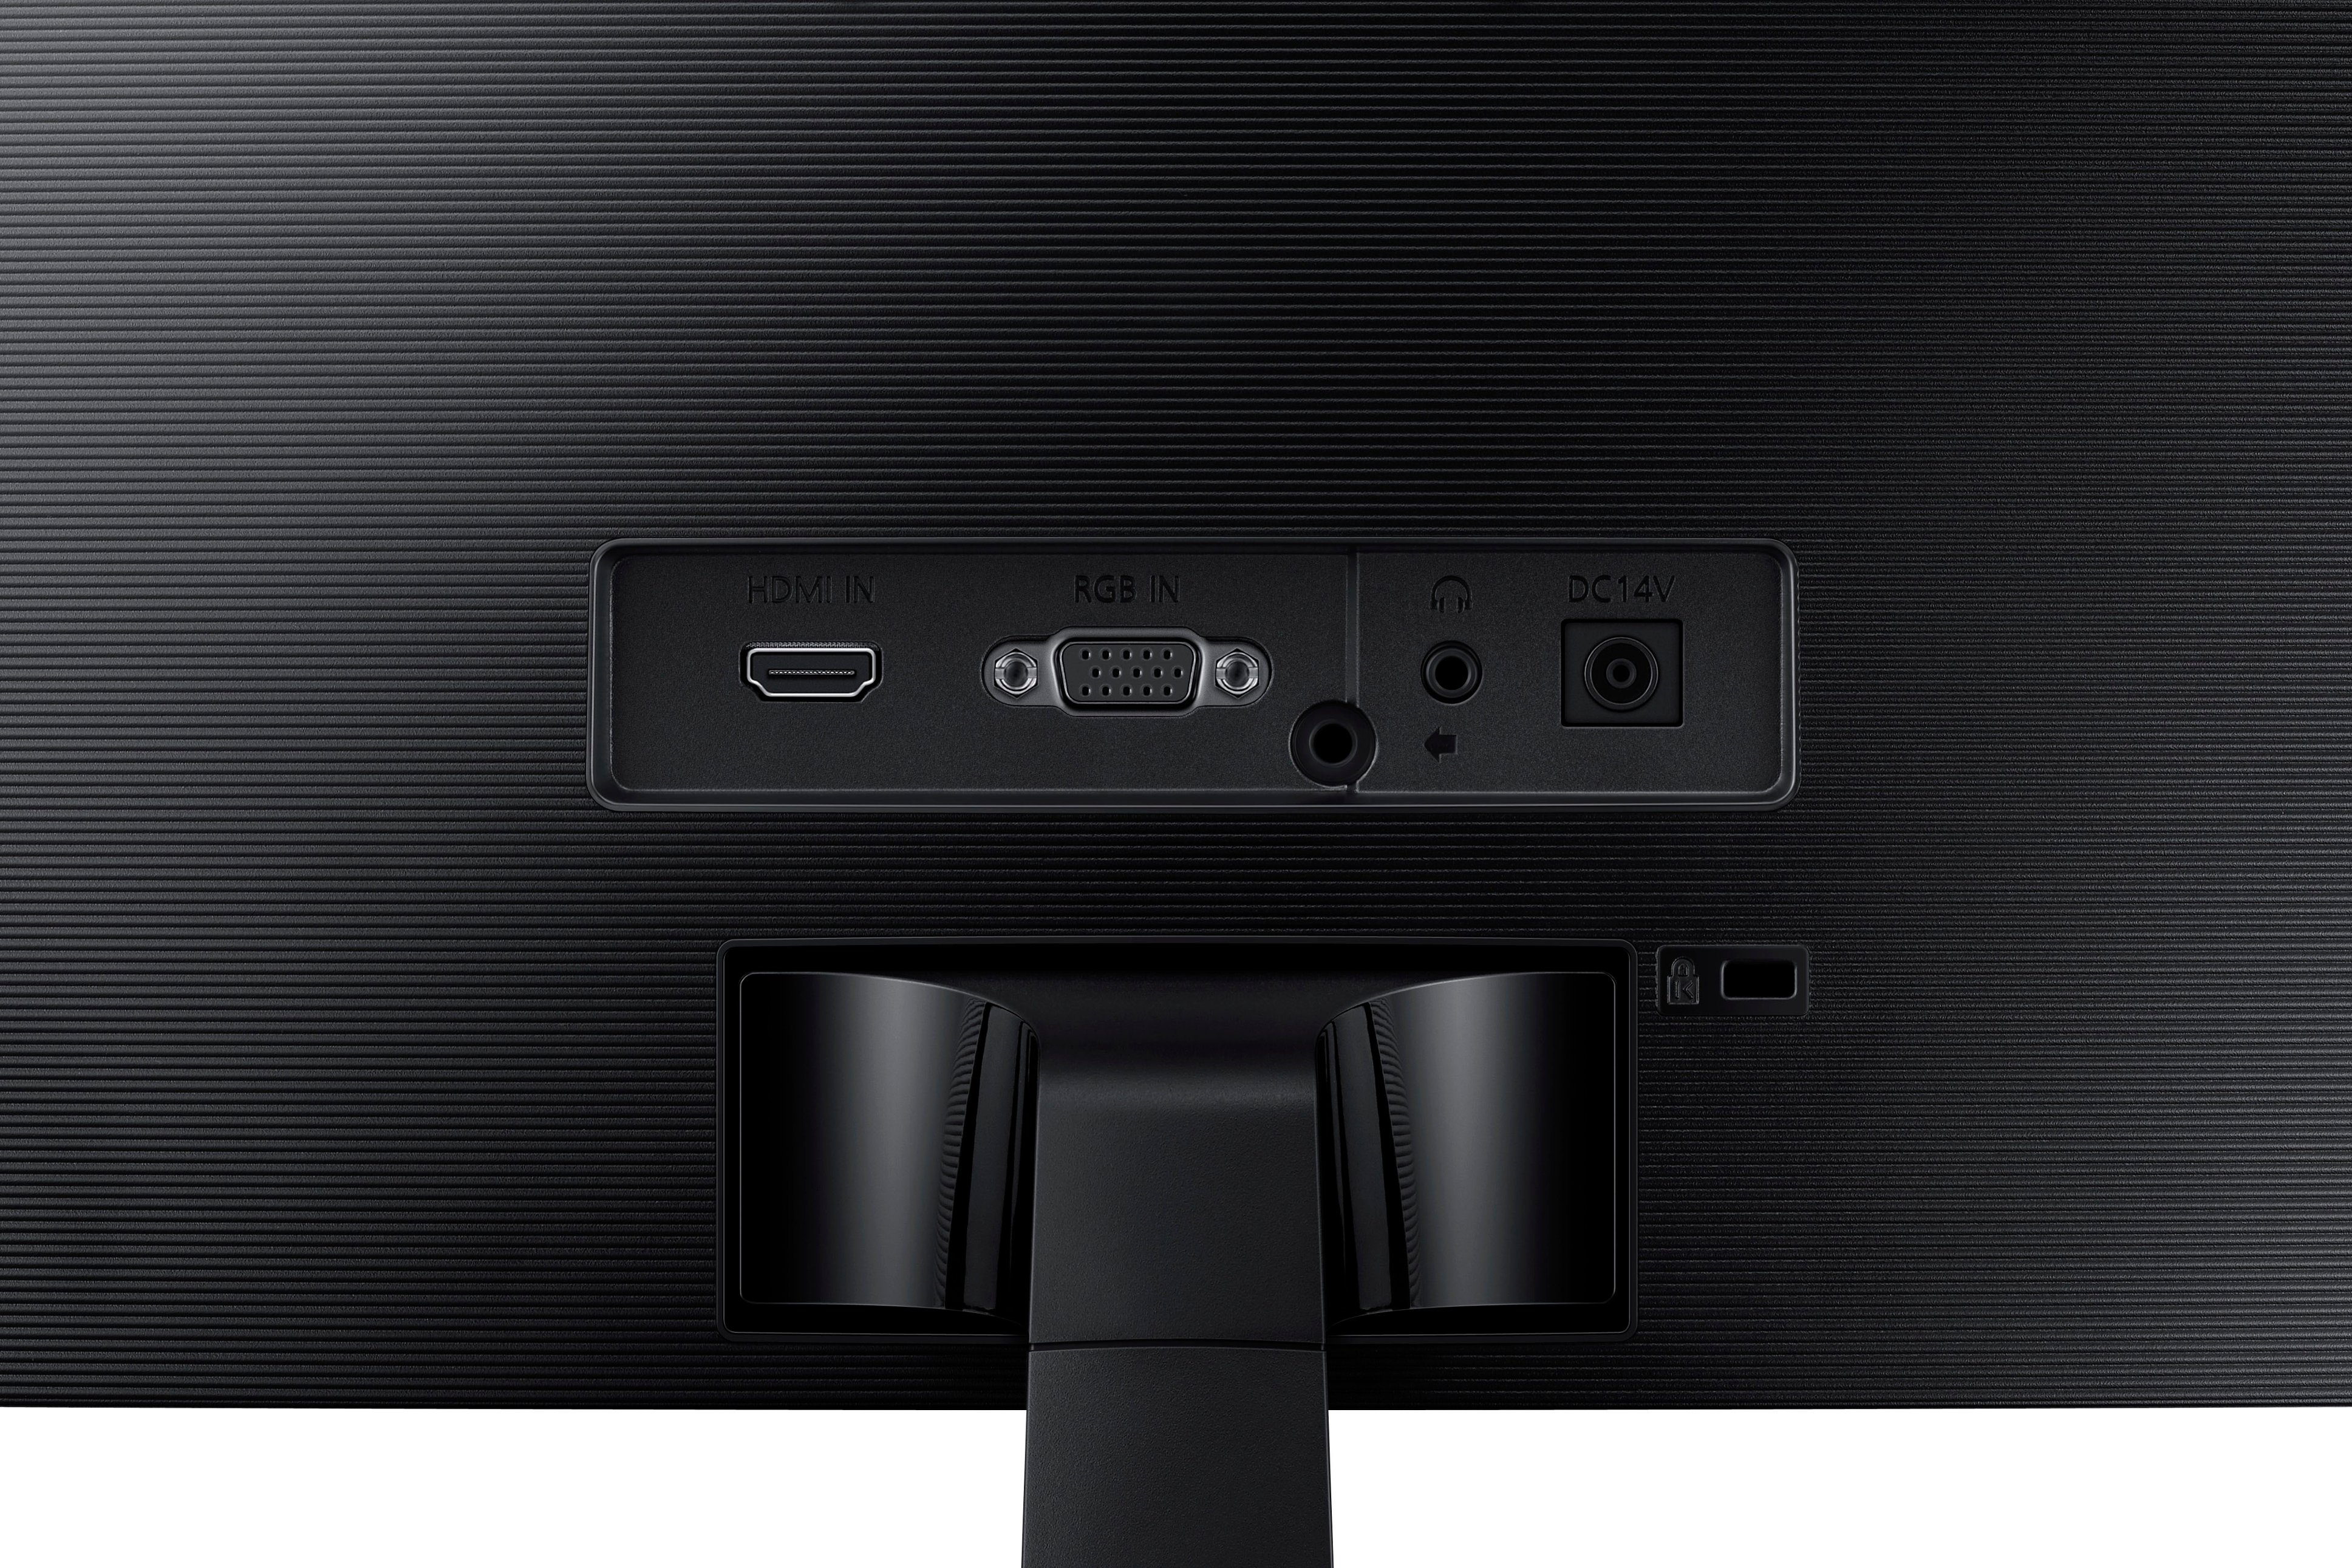 Monitor Curvo 24″ Samsung, Panel VA Full HD, 75Hz, HDMI + VGA, FreeSync –